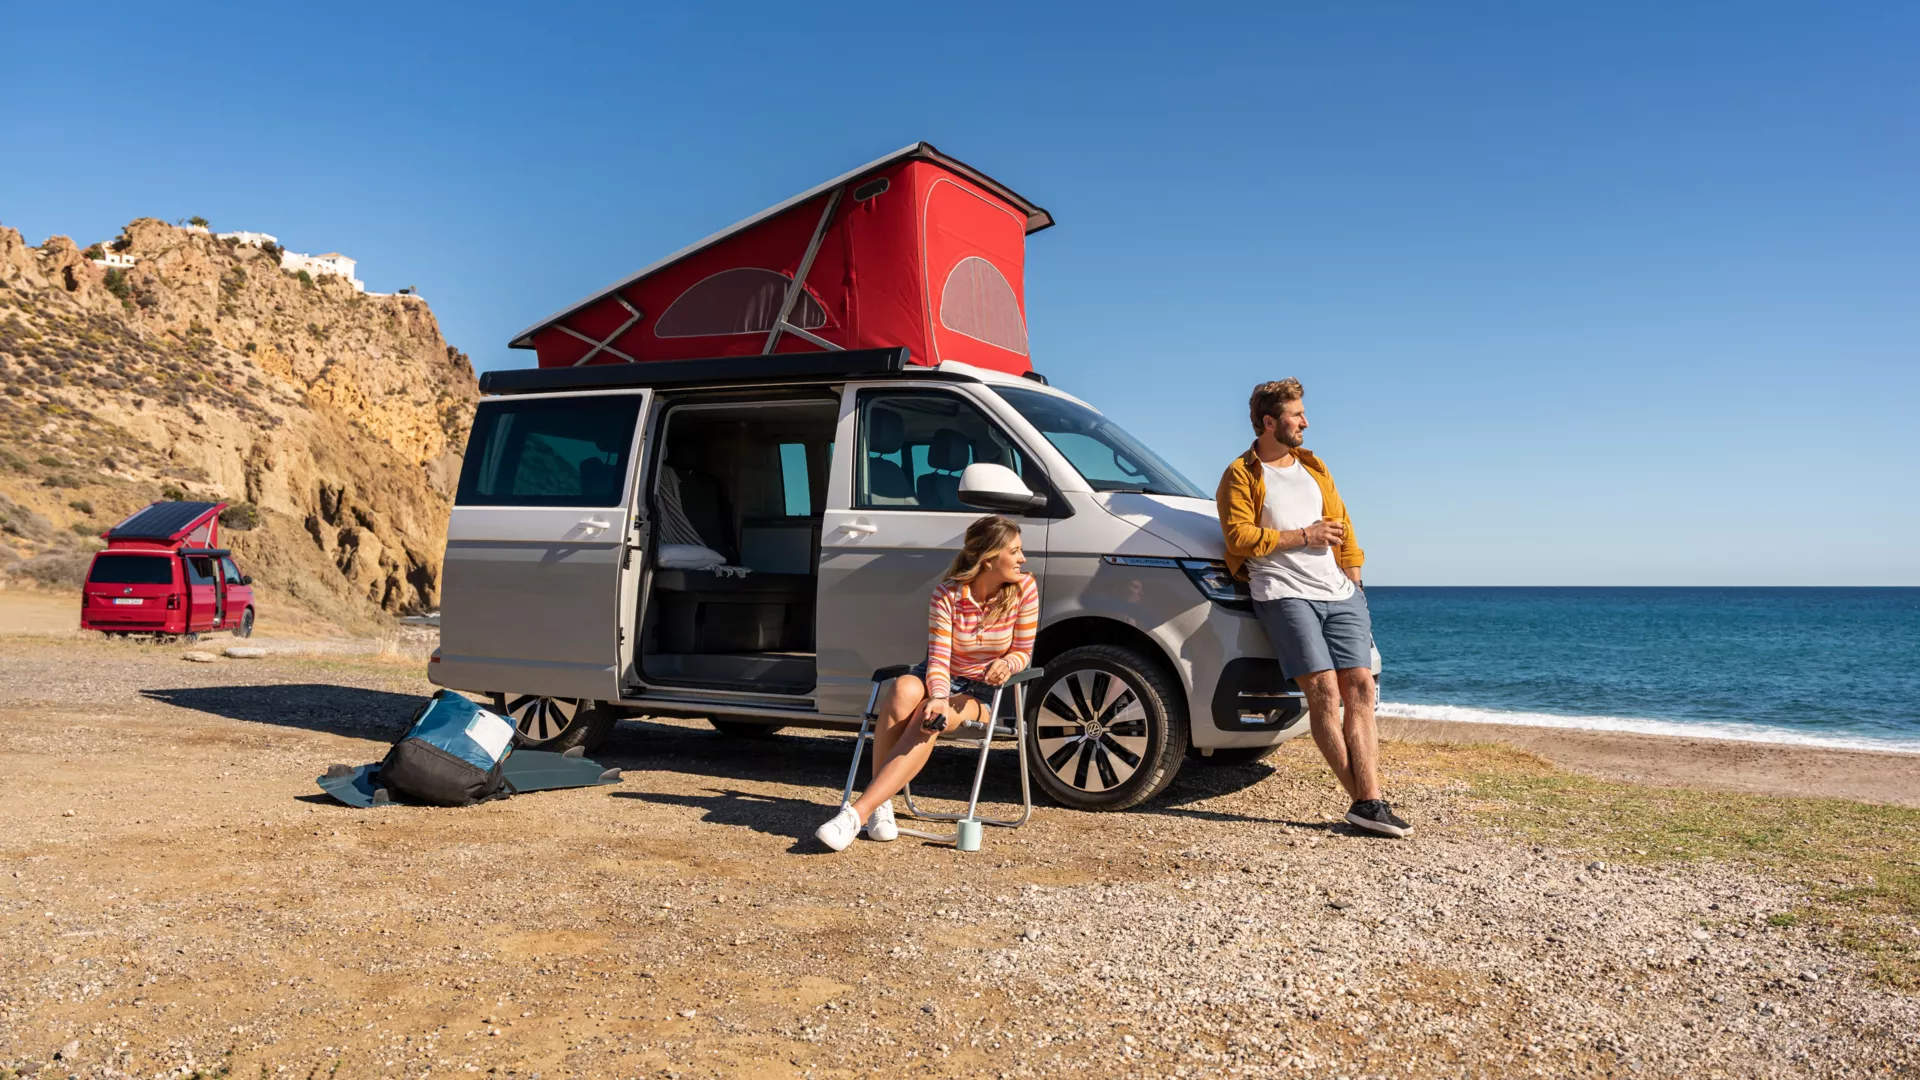 Der California 6.1 befindet sich am Strand. Im Vordergrund sind zwei Personen abgebildet, die den Camper für ihre Reise benutzen. 